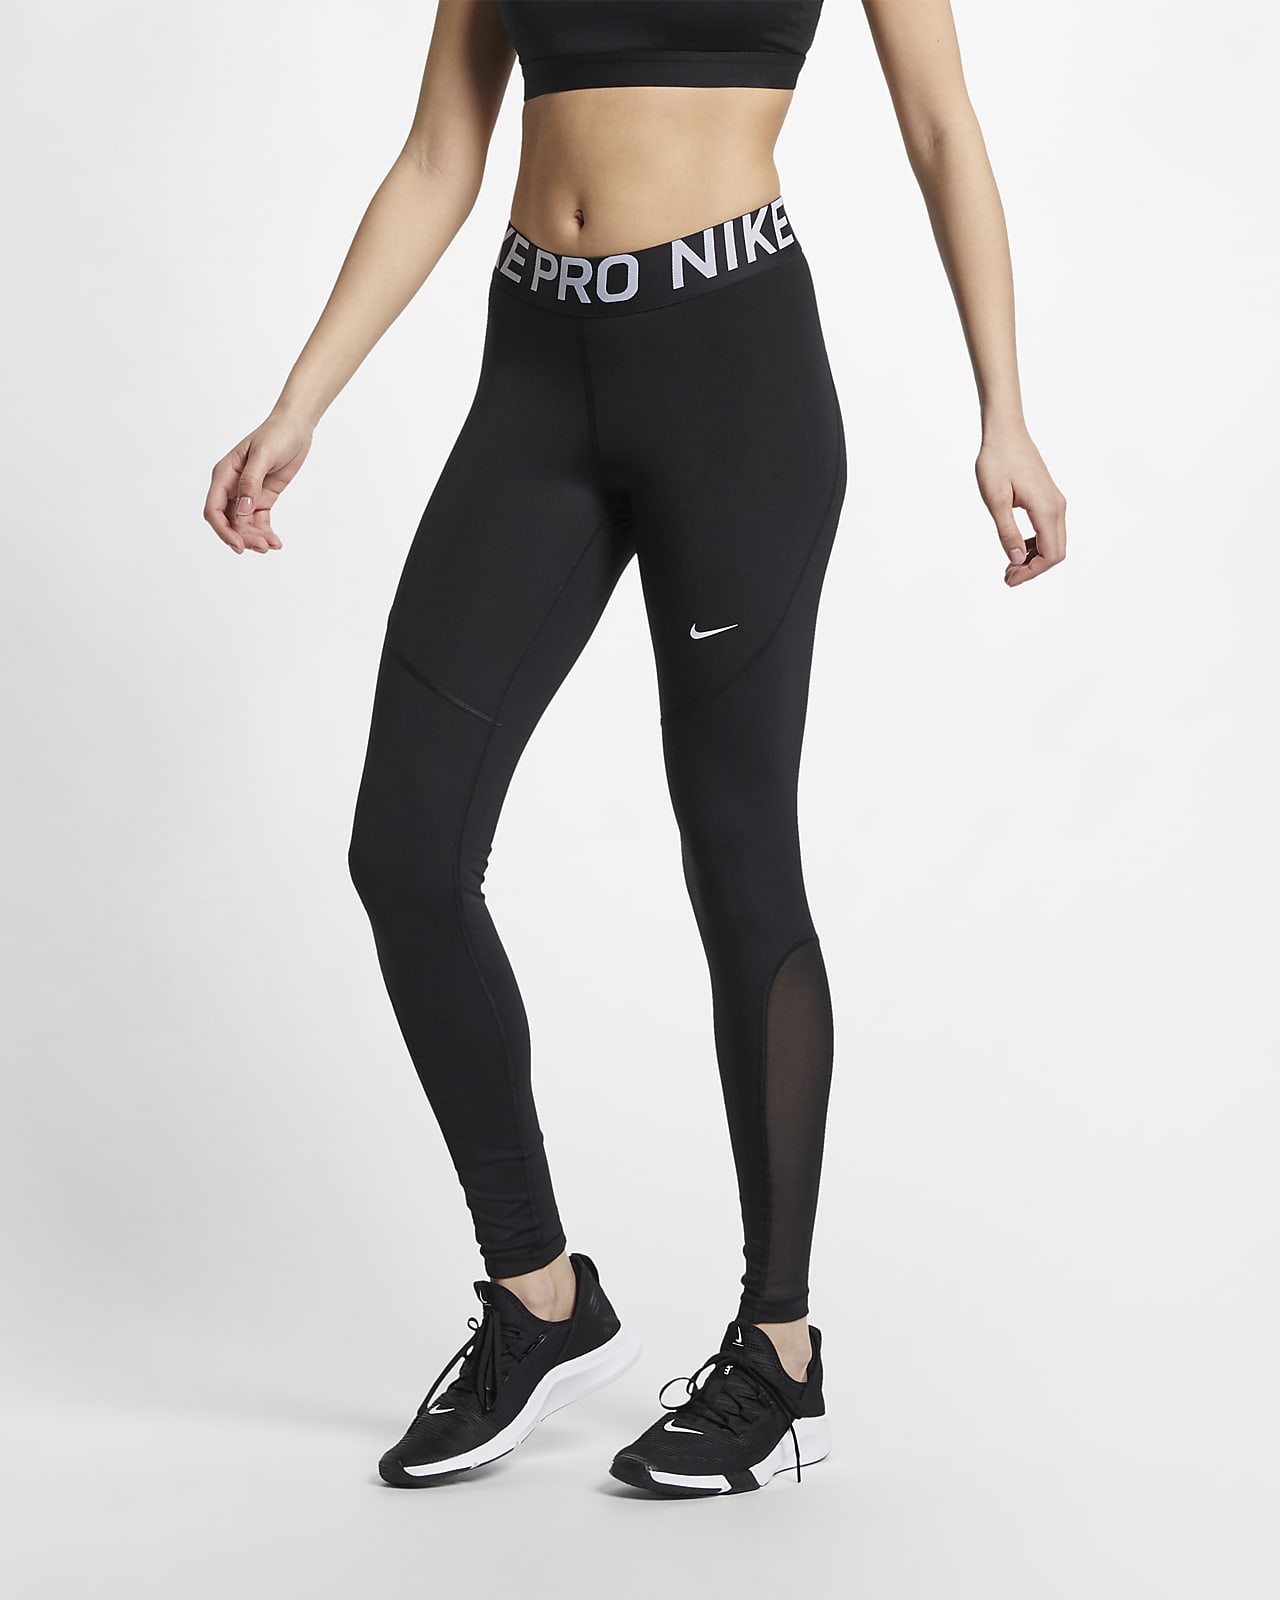 Buy > tight nike leggings > in stock